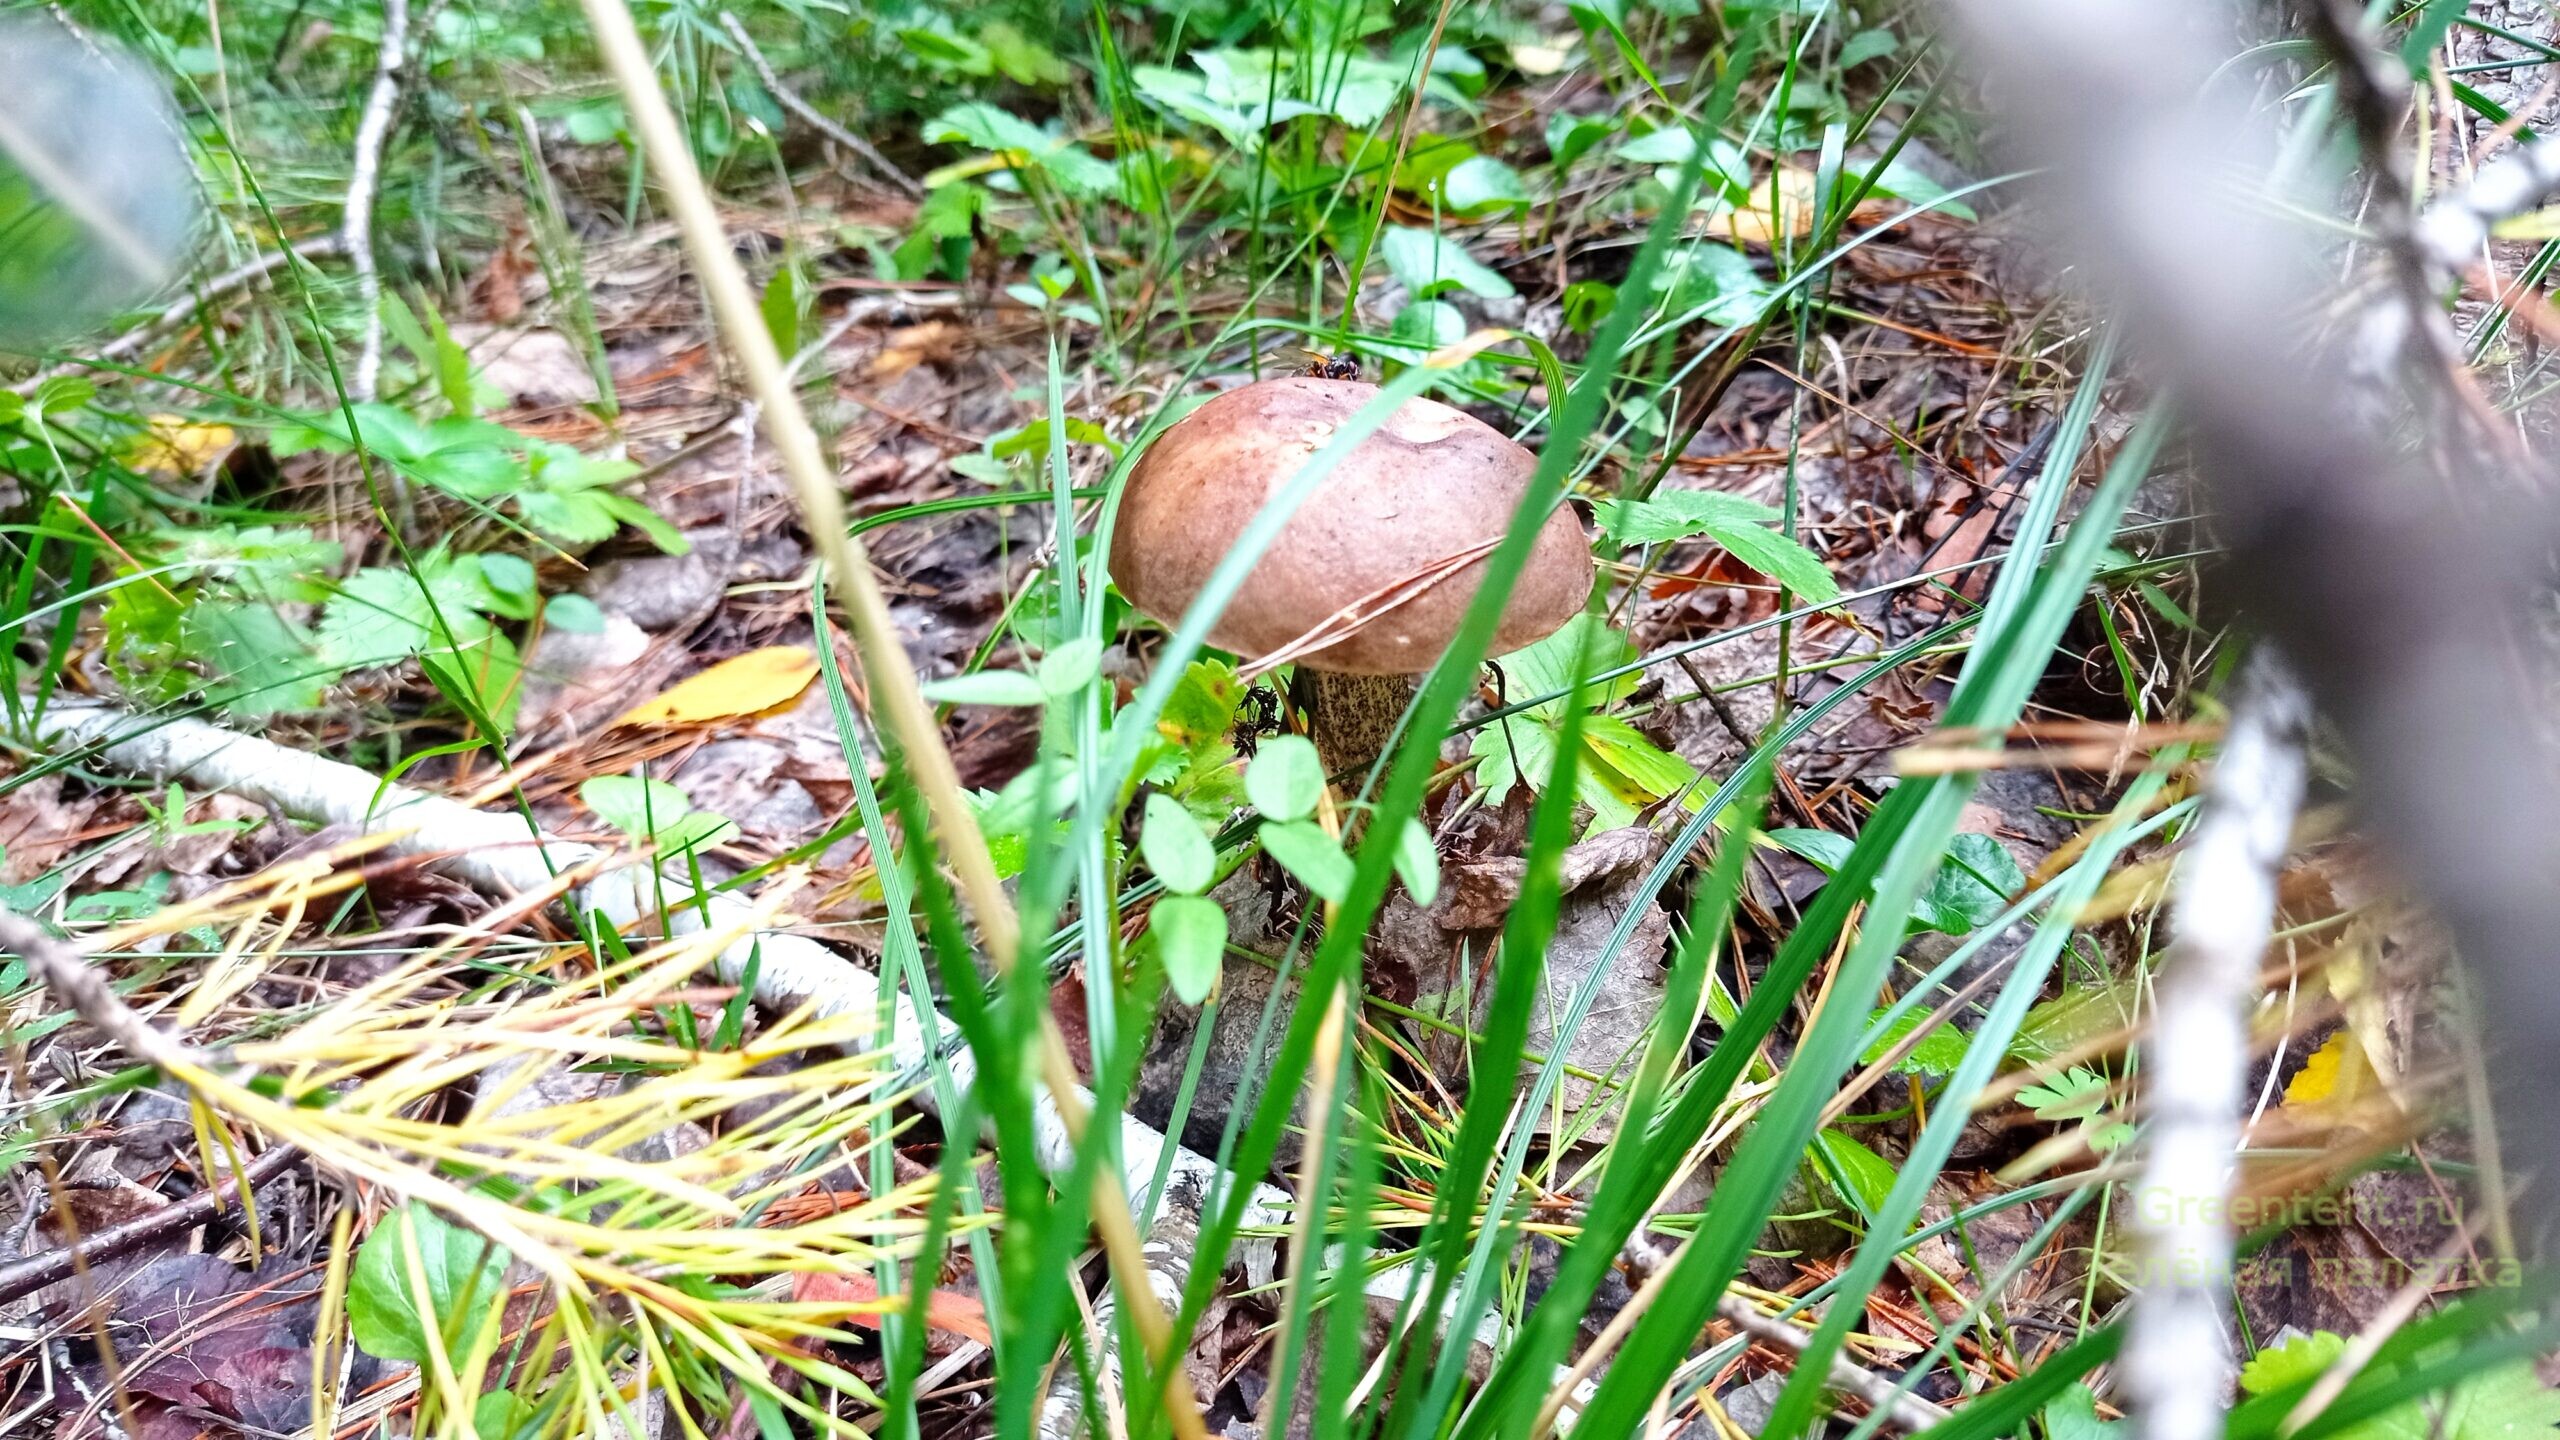 собирать грибы тихая охота лес природа отдых